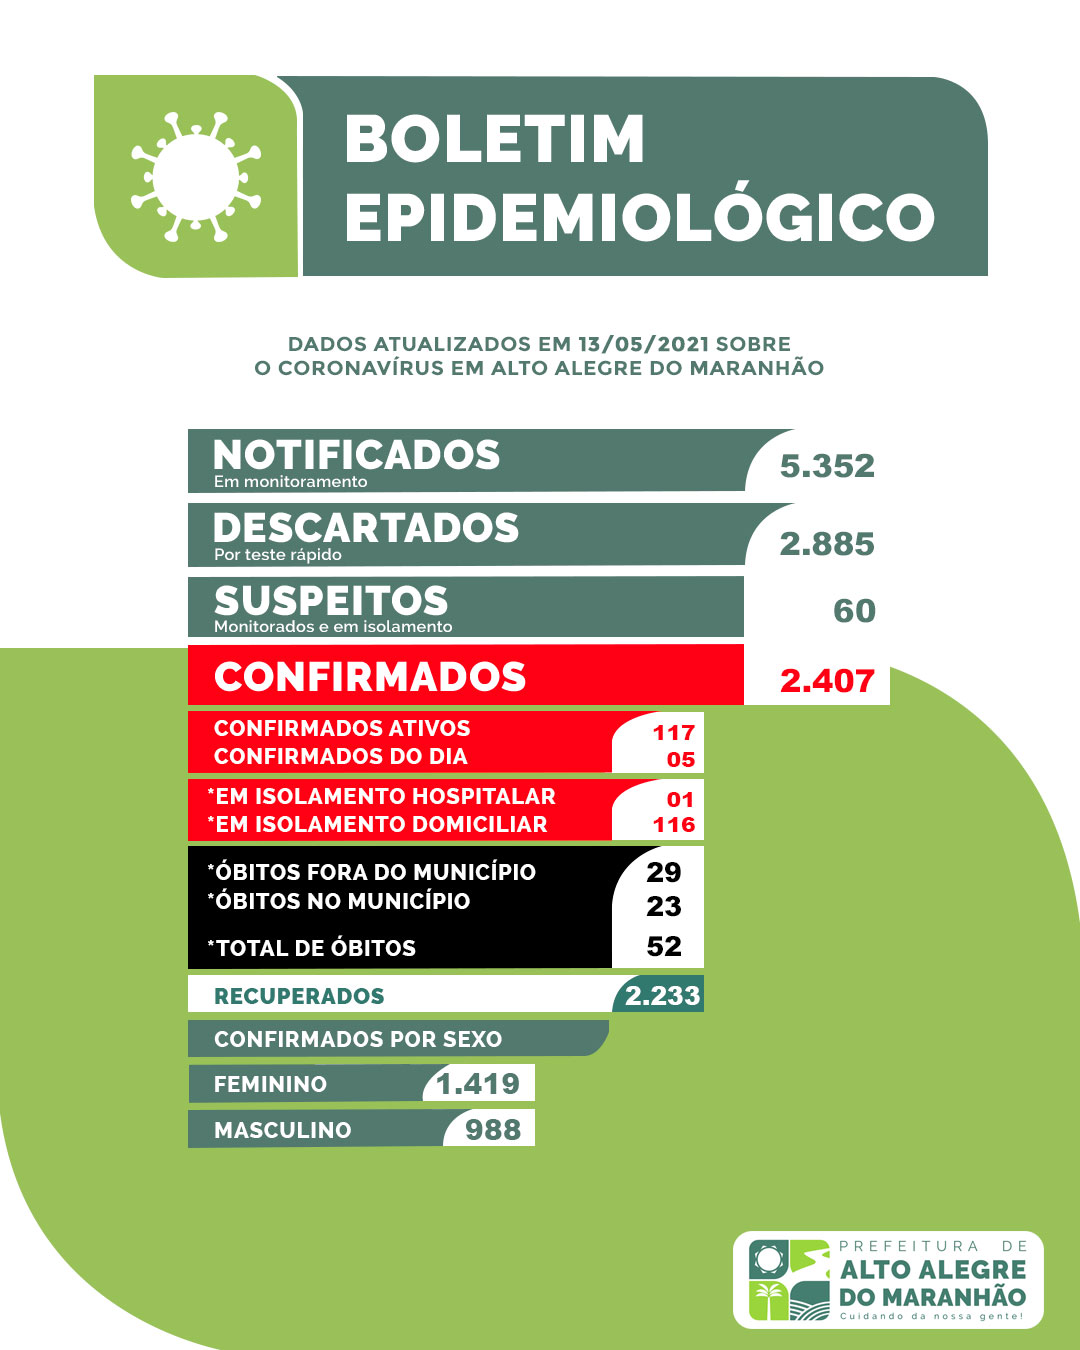 [COVID-19] BOLETIM EPIDEMIOLÓGICO ATUALIZADO DE ALTO ALEGRE DO MARANHÃO